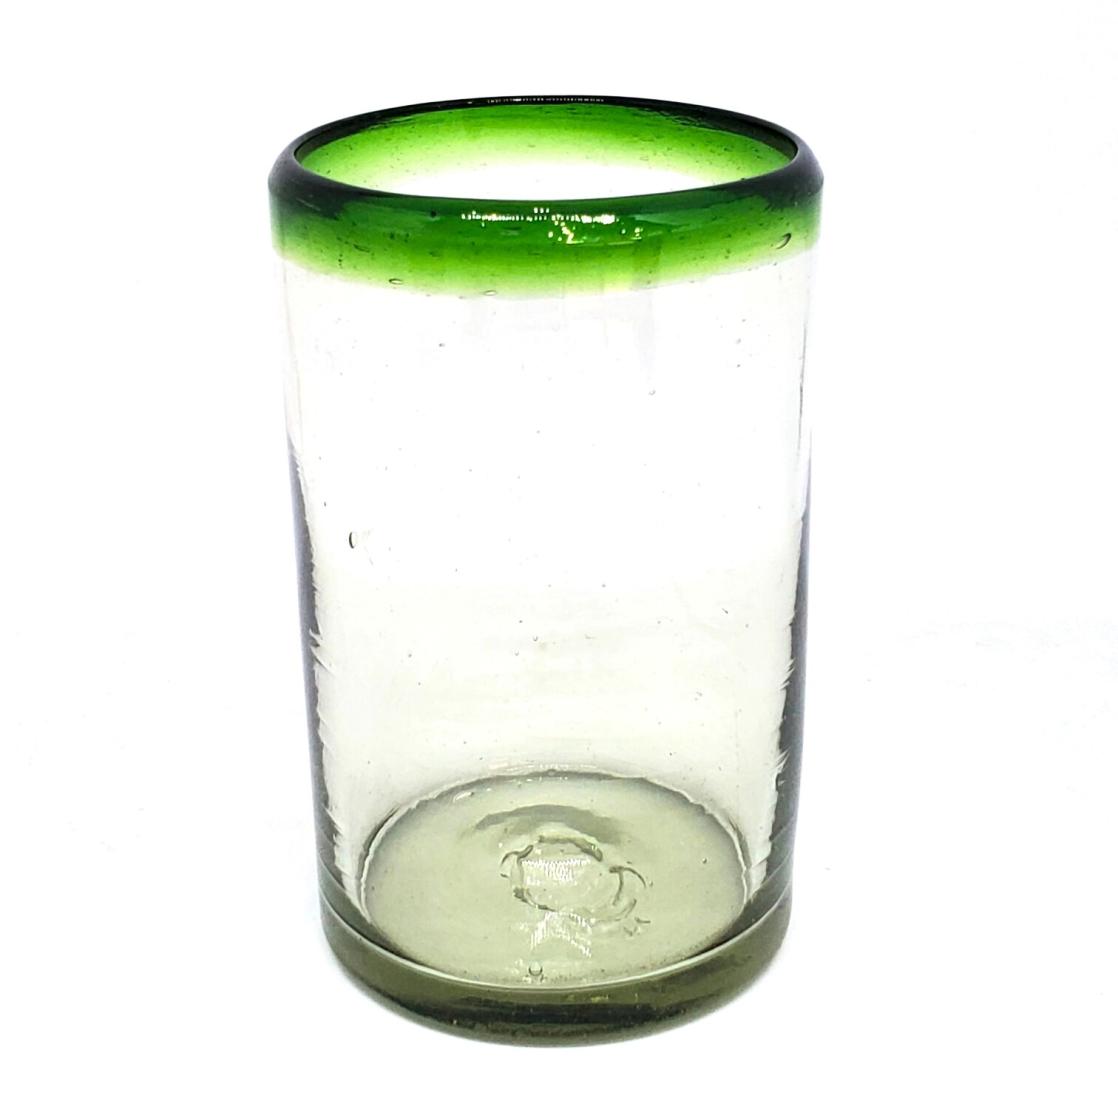 VIDRIO SOPLADO / Juego de 6 vasos grandes con borde verde esmeralda / stos artesanales vasos le darn un toque clsico a su bebida favorita.